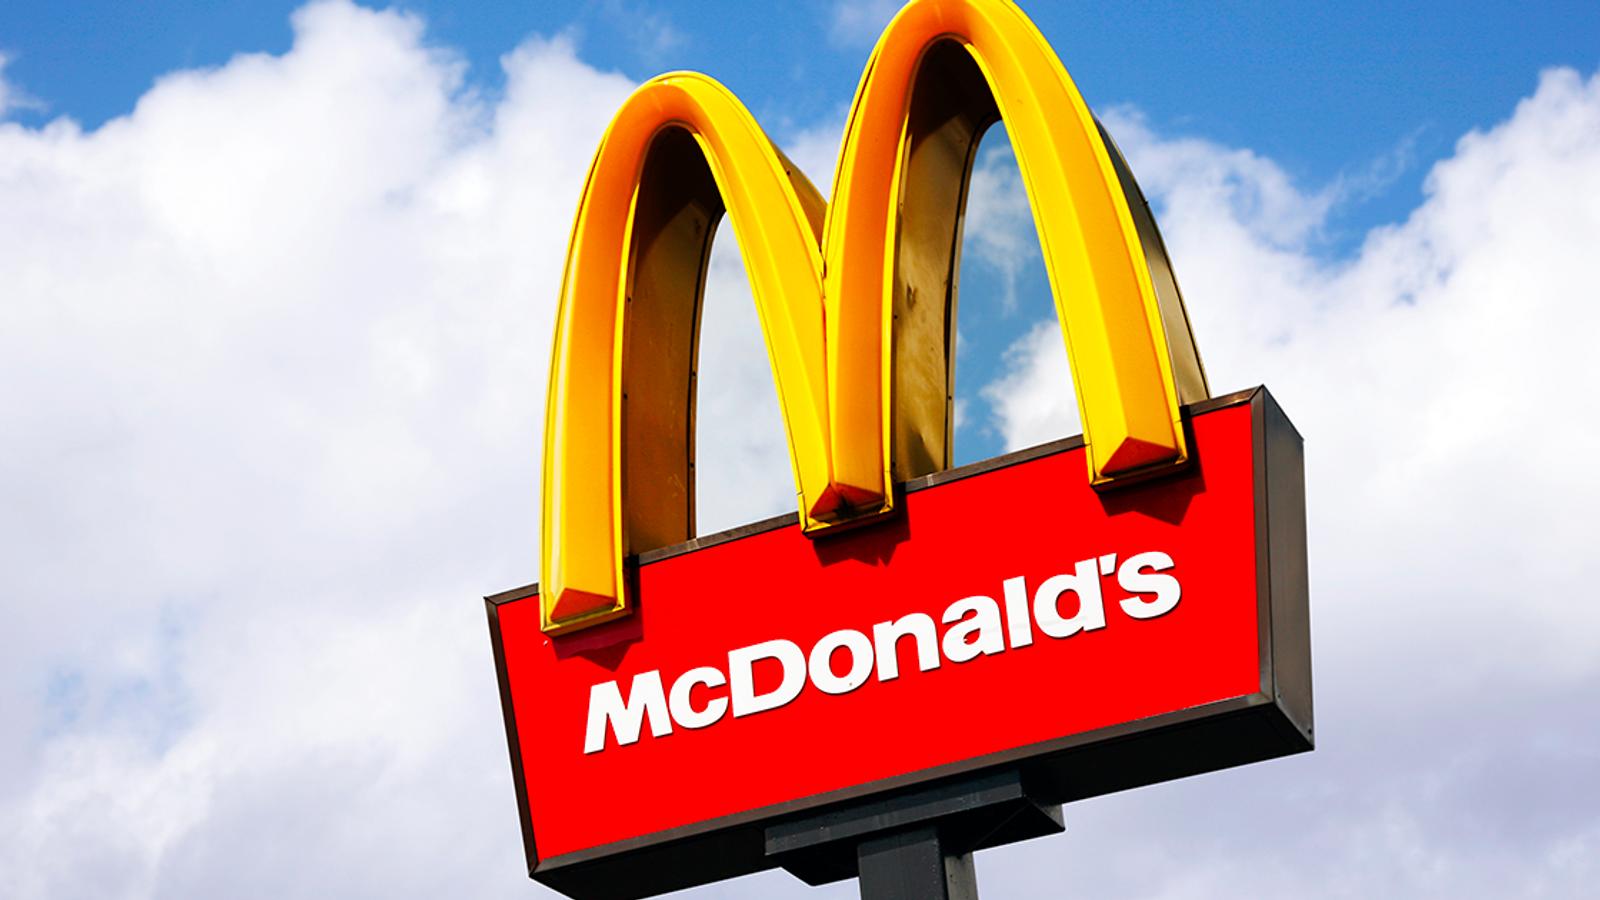 McDonald's annonce une nouvelle majeure qui va faire plaisir à beaucoup de clients